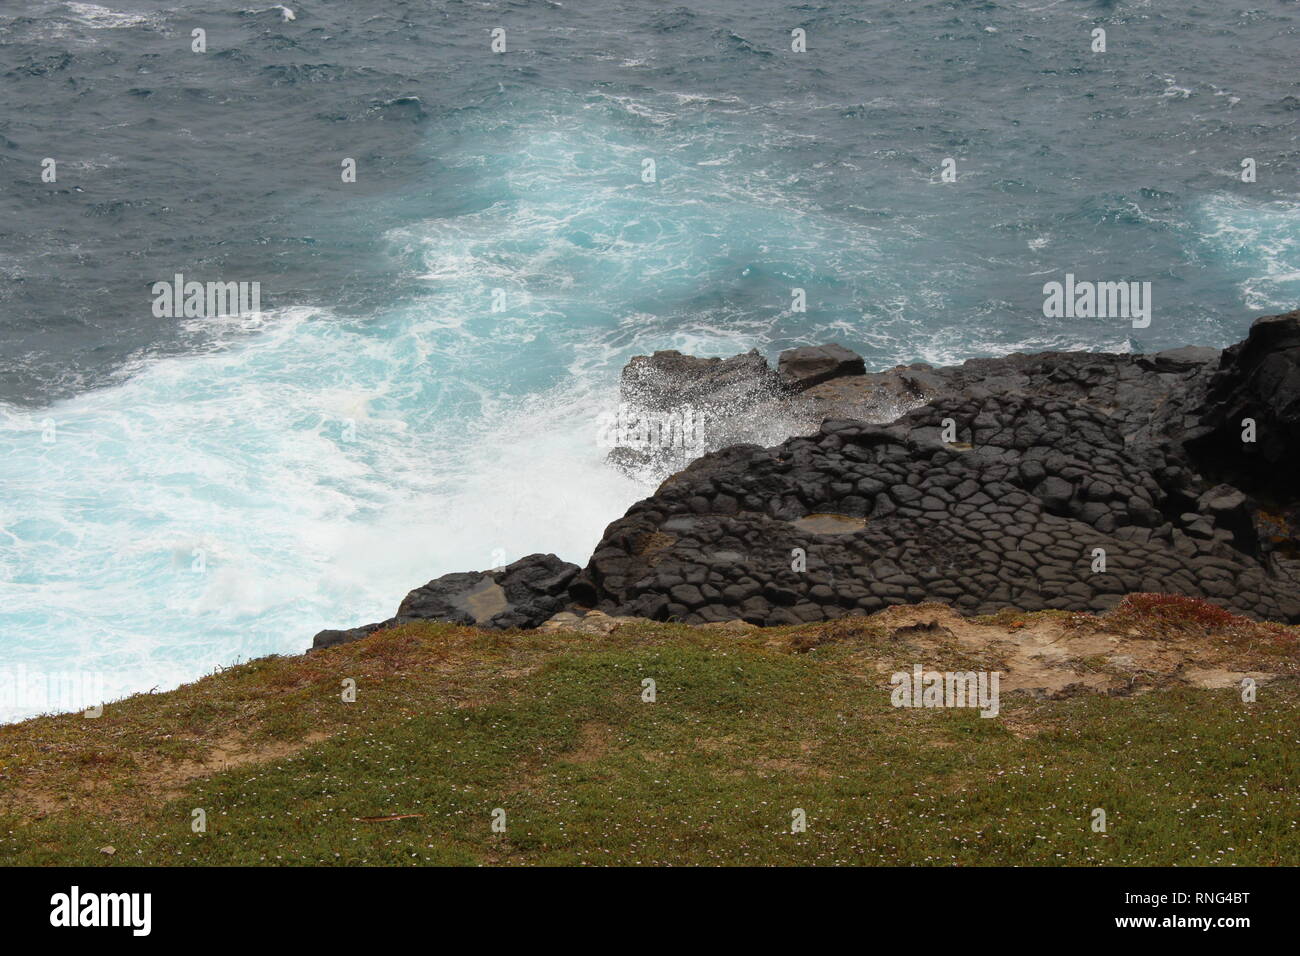 Violente onde che si infrangono sulla South Australian coast Foto Stock